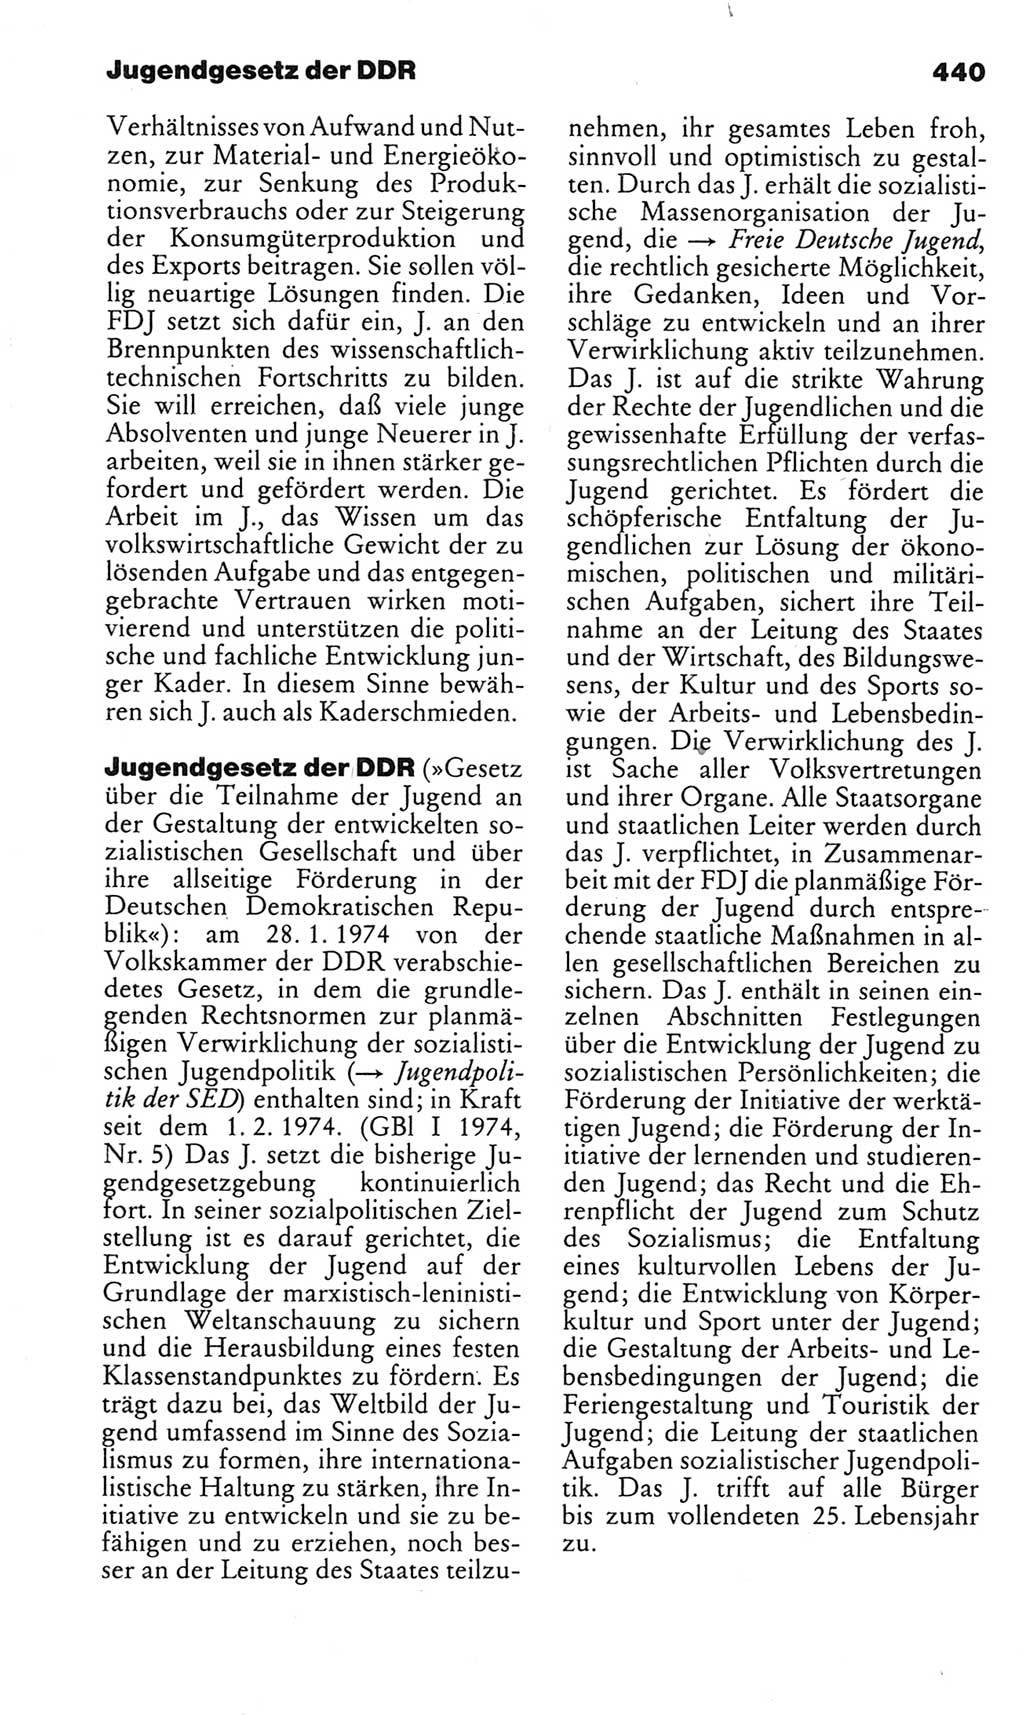 Kleines politisches Wörterbuch [Deutsche Demokratische Republik (DDR)] 1983, Seite 440 (Kl. pol. Wb. DDR 1983, S. 440)